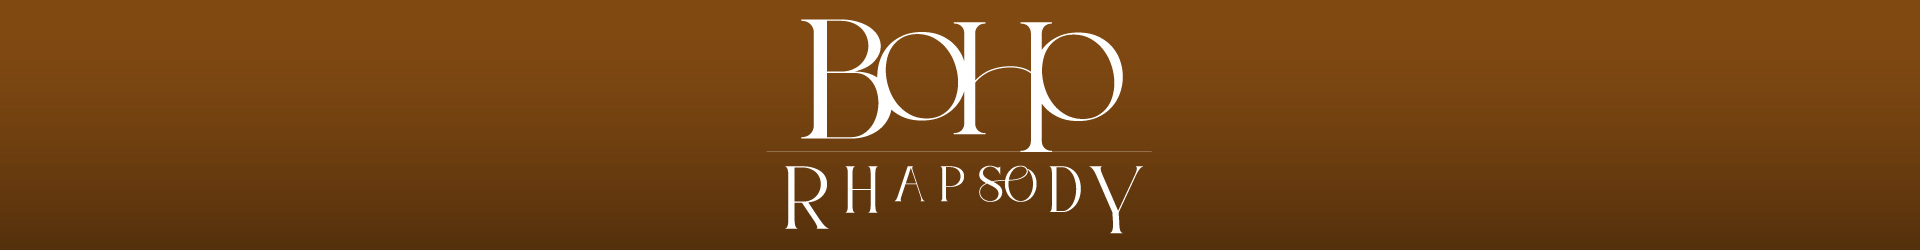 Nueva colección Boho Rhapsody en tonos tierra 